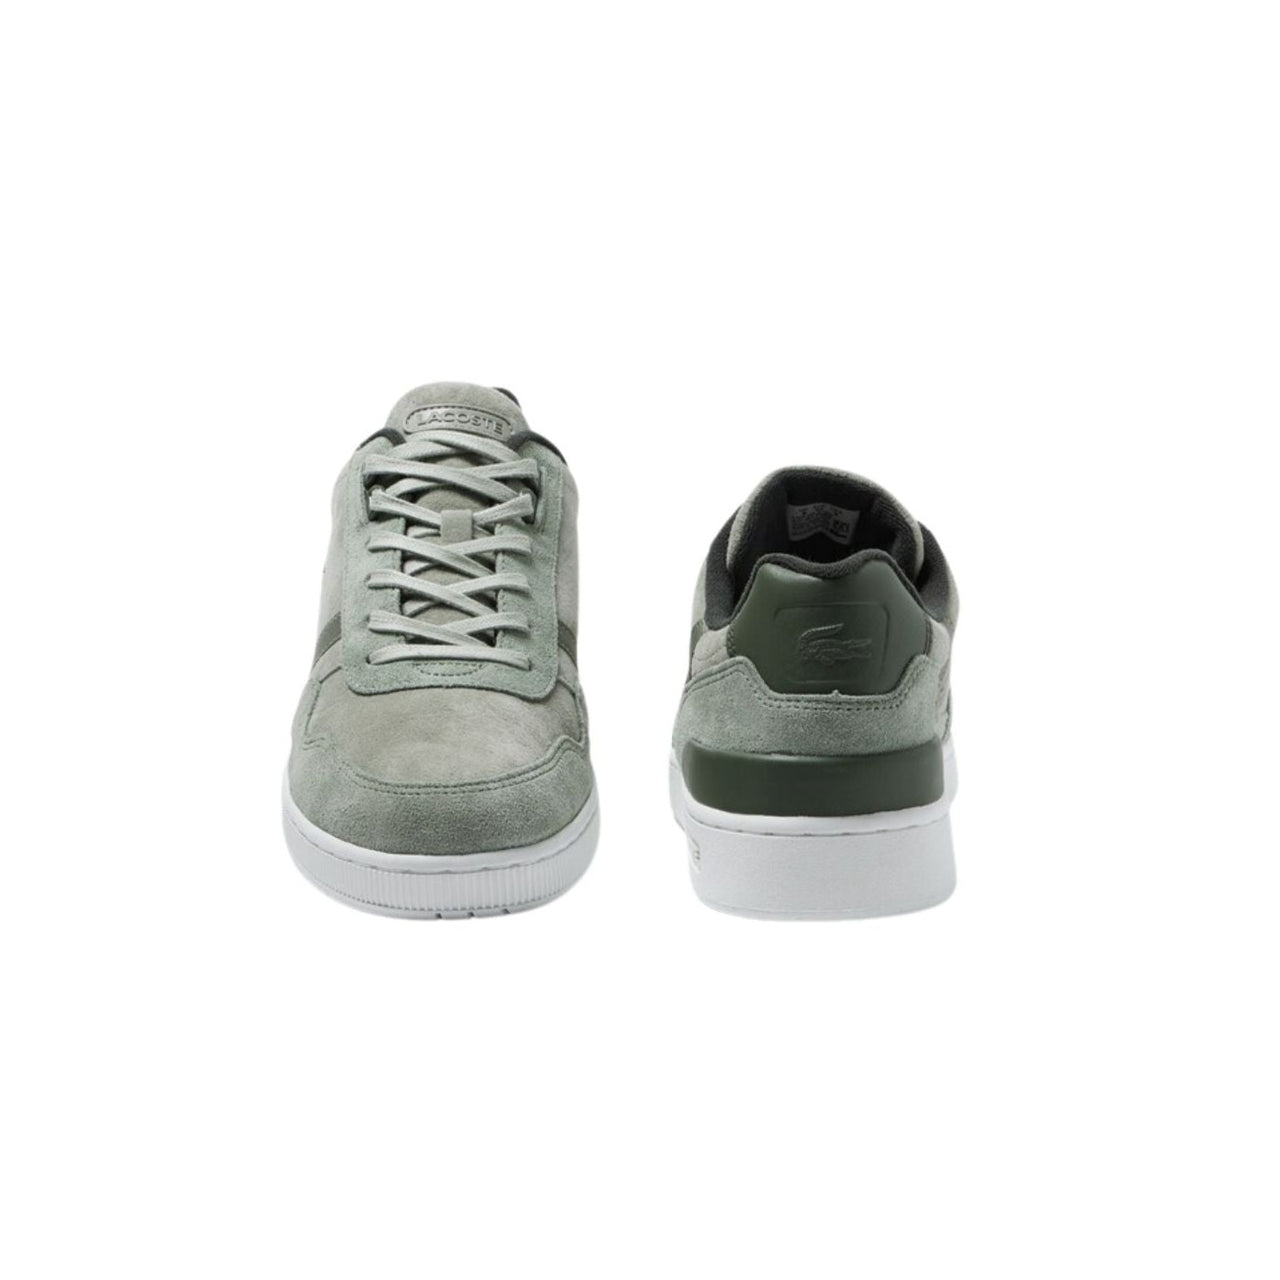 Zapatillas Lacoste Hombre 44Sma0082 - Men'S T-Clip Leather Earth Tone Pack Sneakers - Medina Menswear®